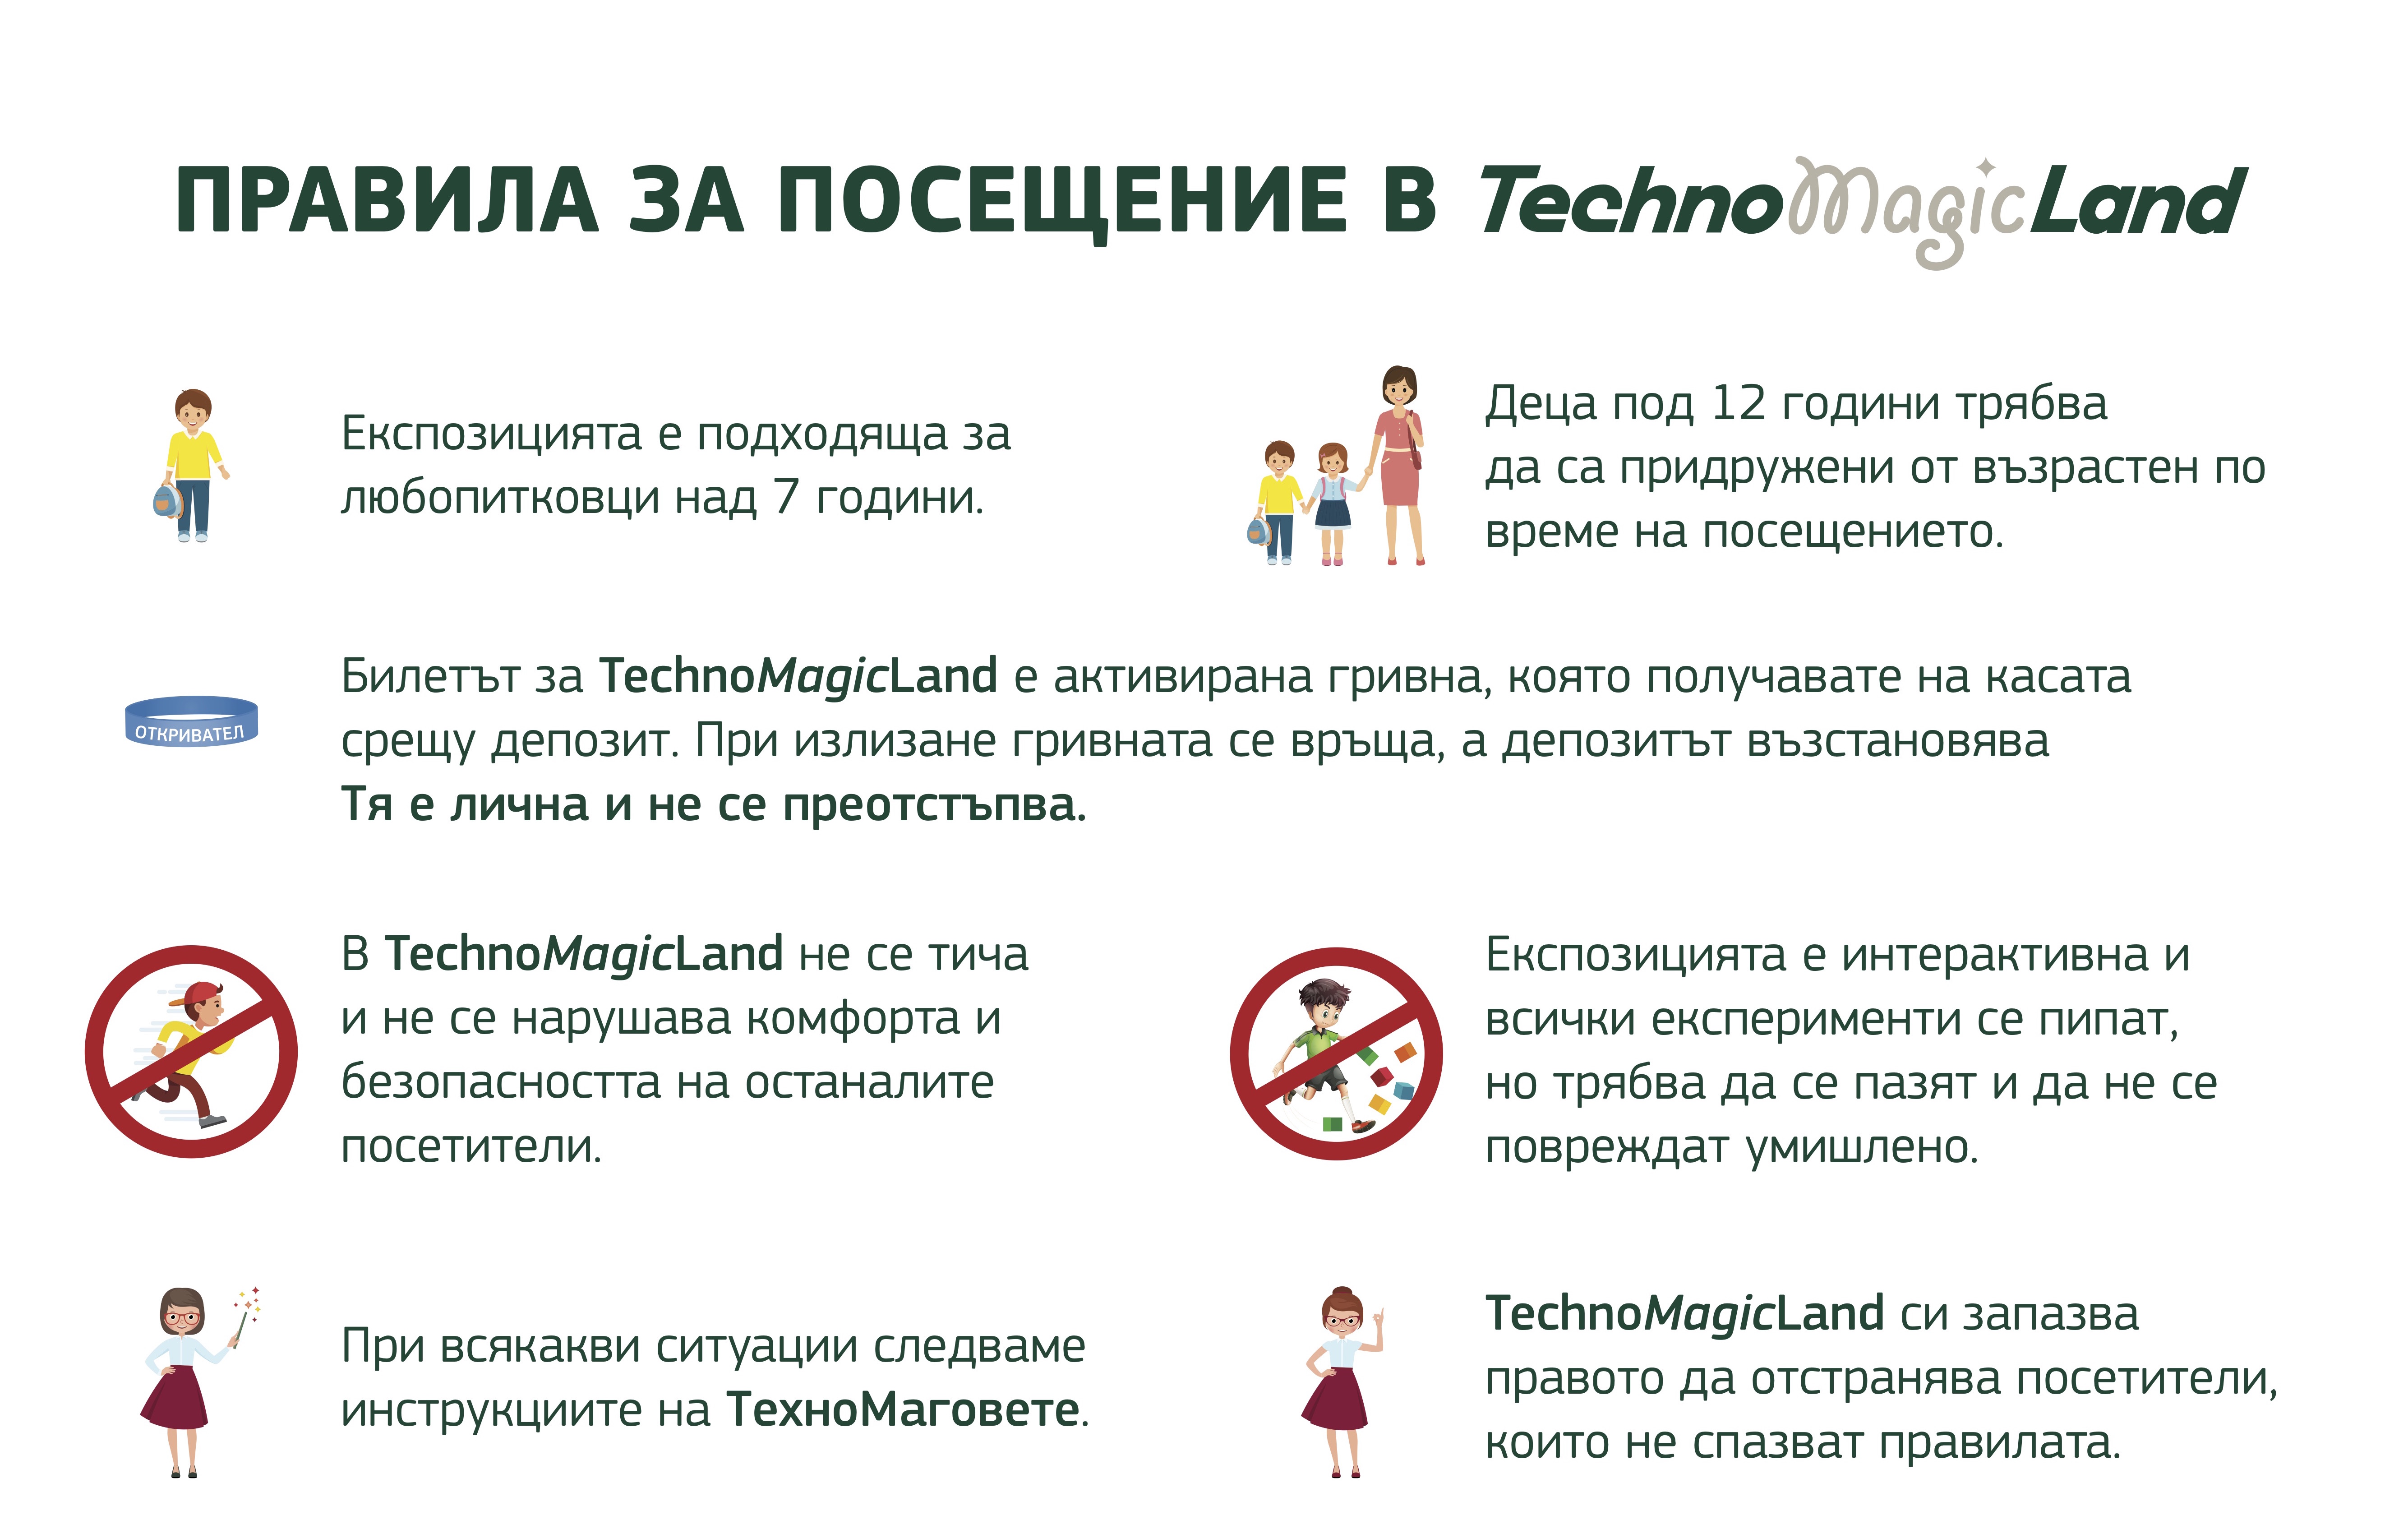 Преди да посетиш TechnoMagicLand - виж правилата за поведение